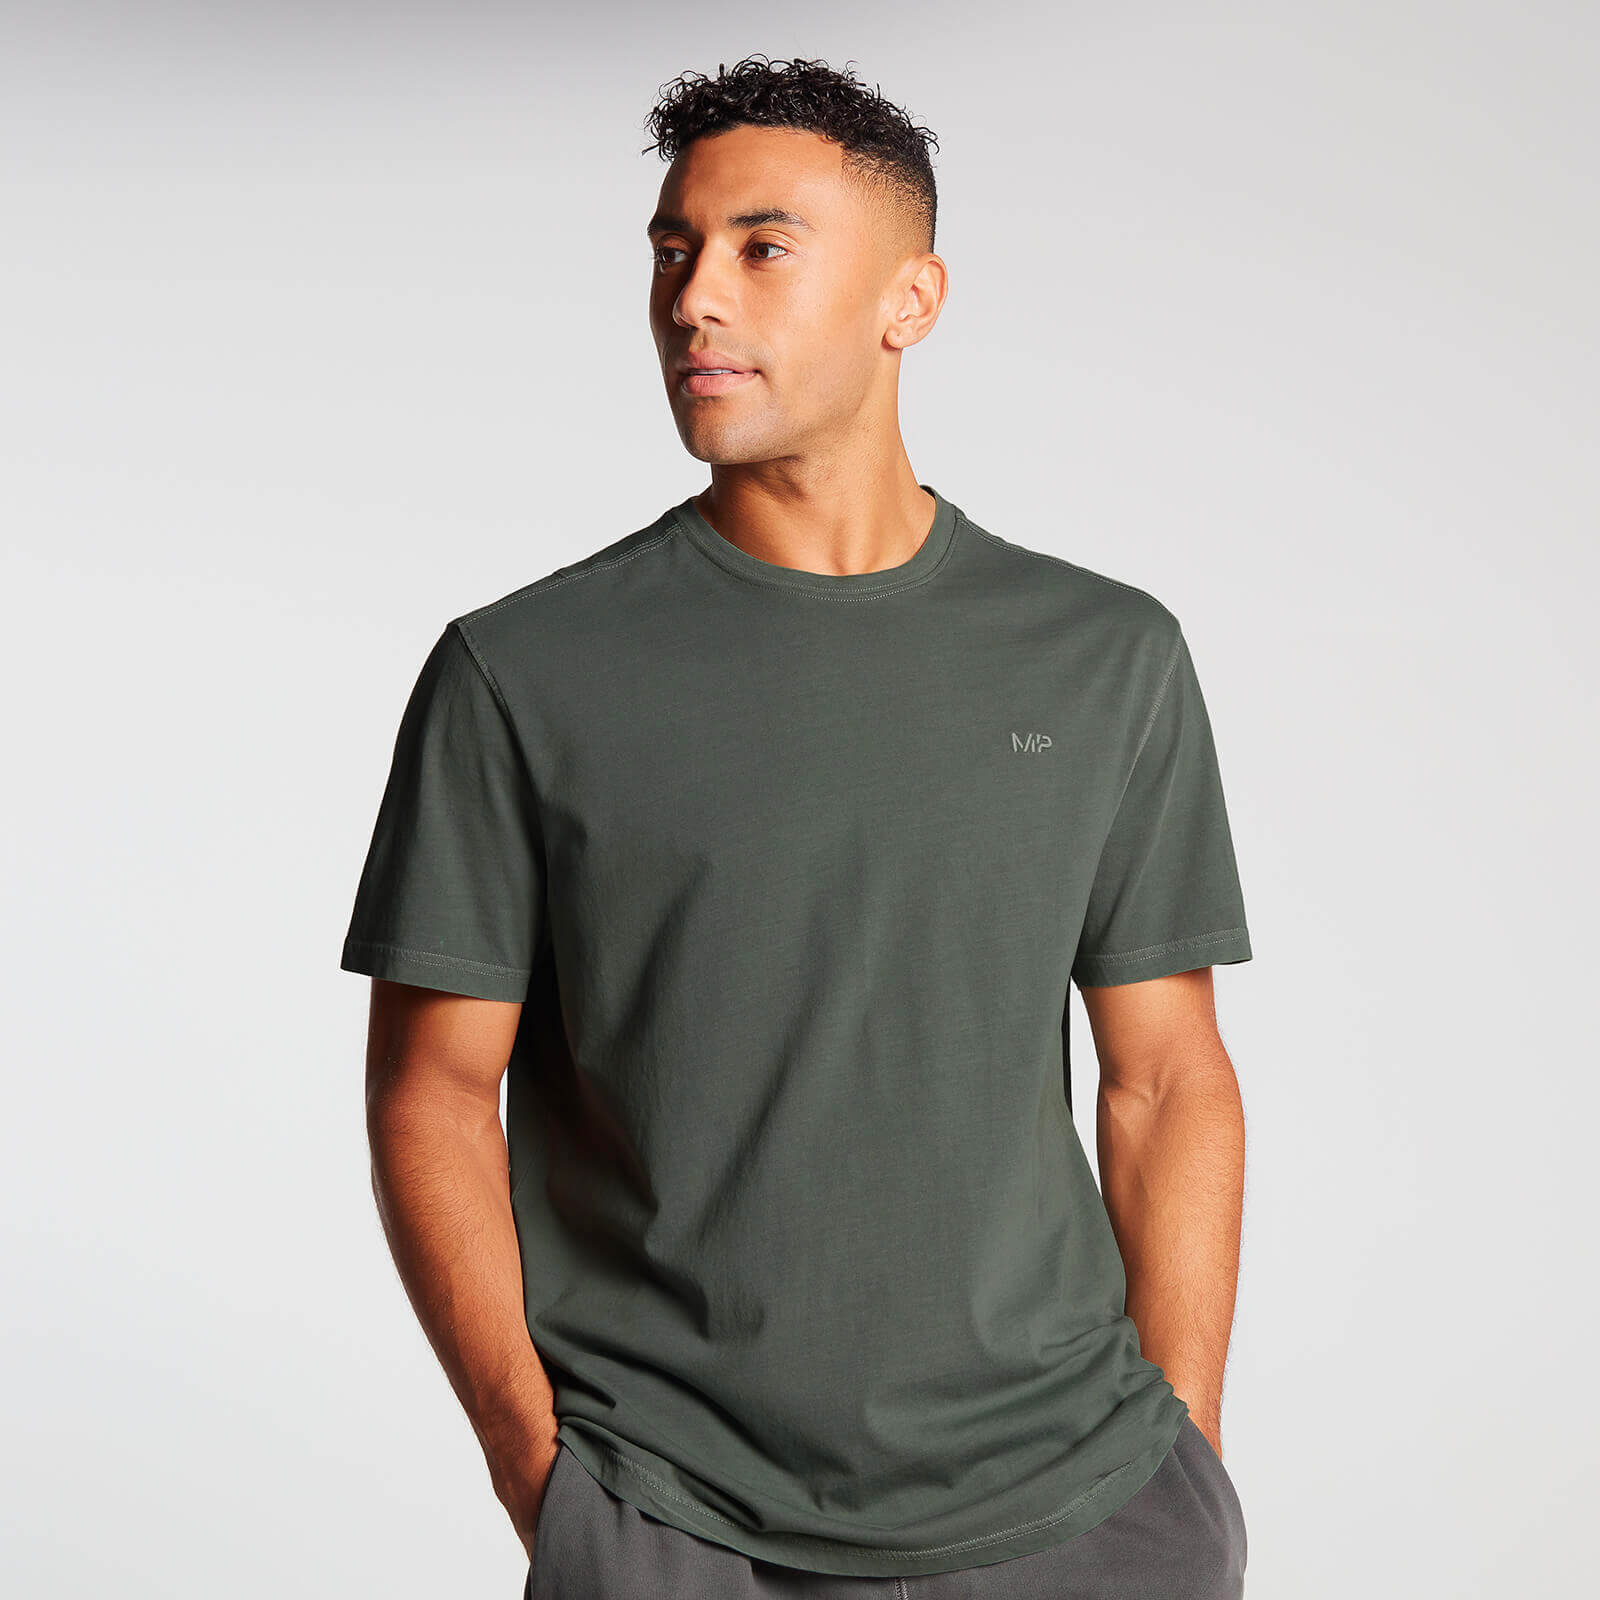 Мъжка спортна тениска с къс ръкав и нестандартен размер на MP - тъмнозелено